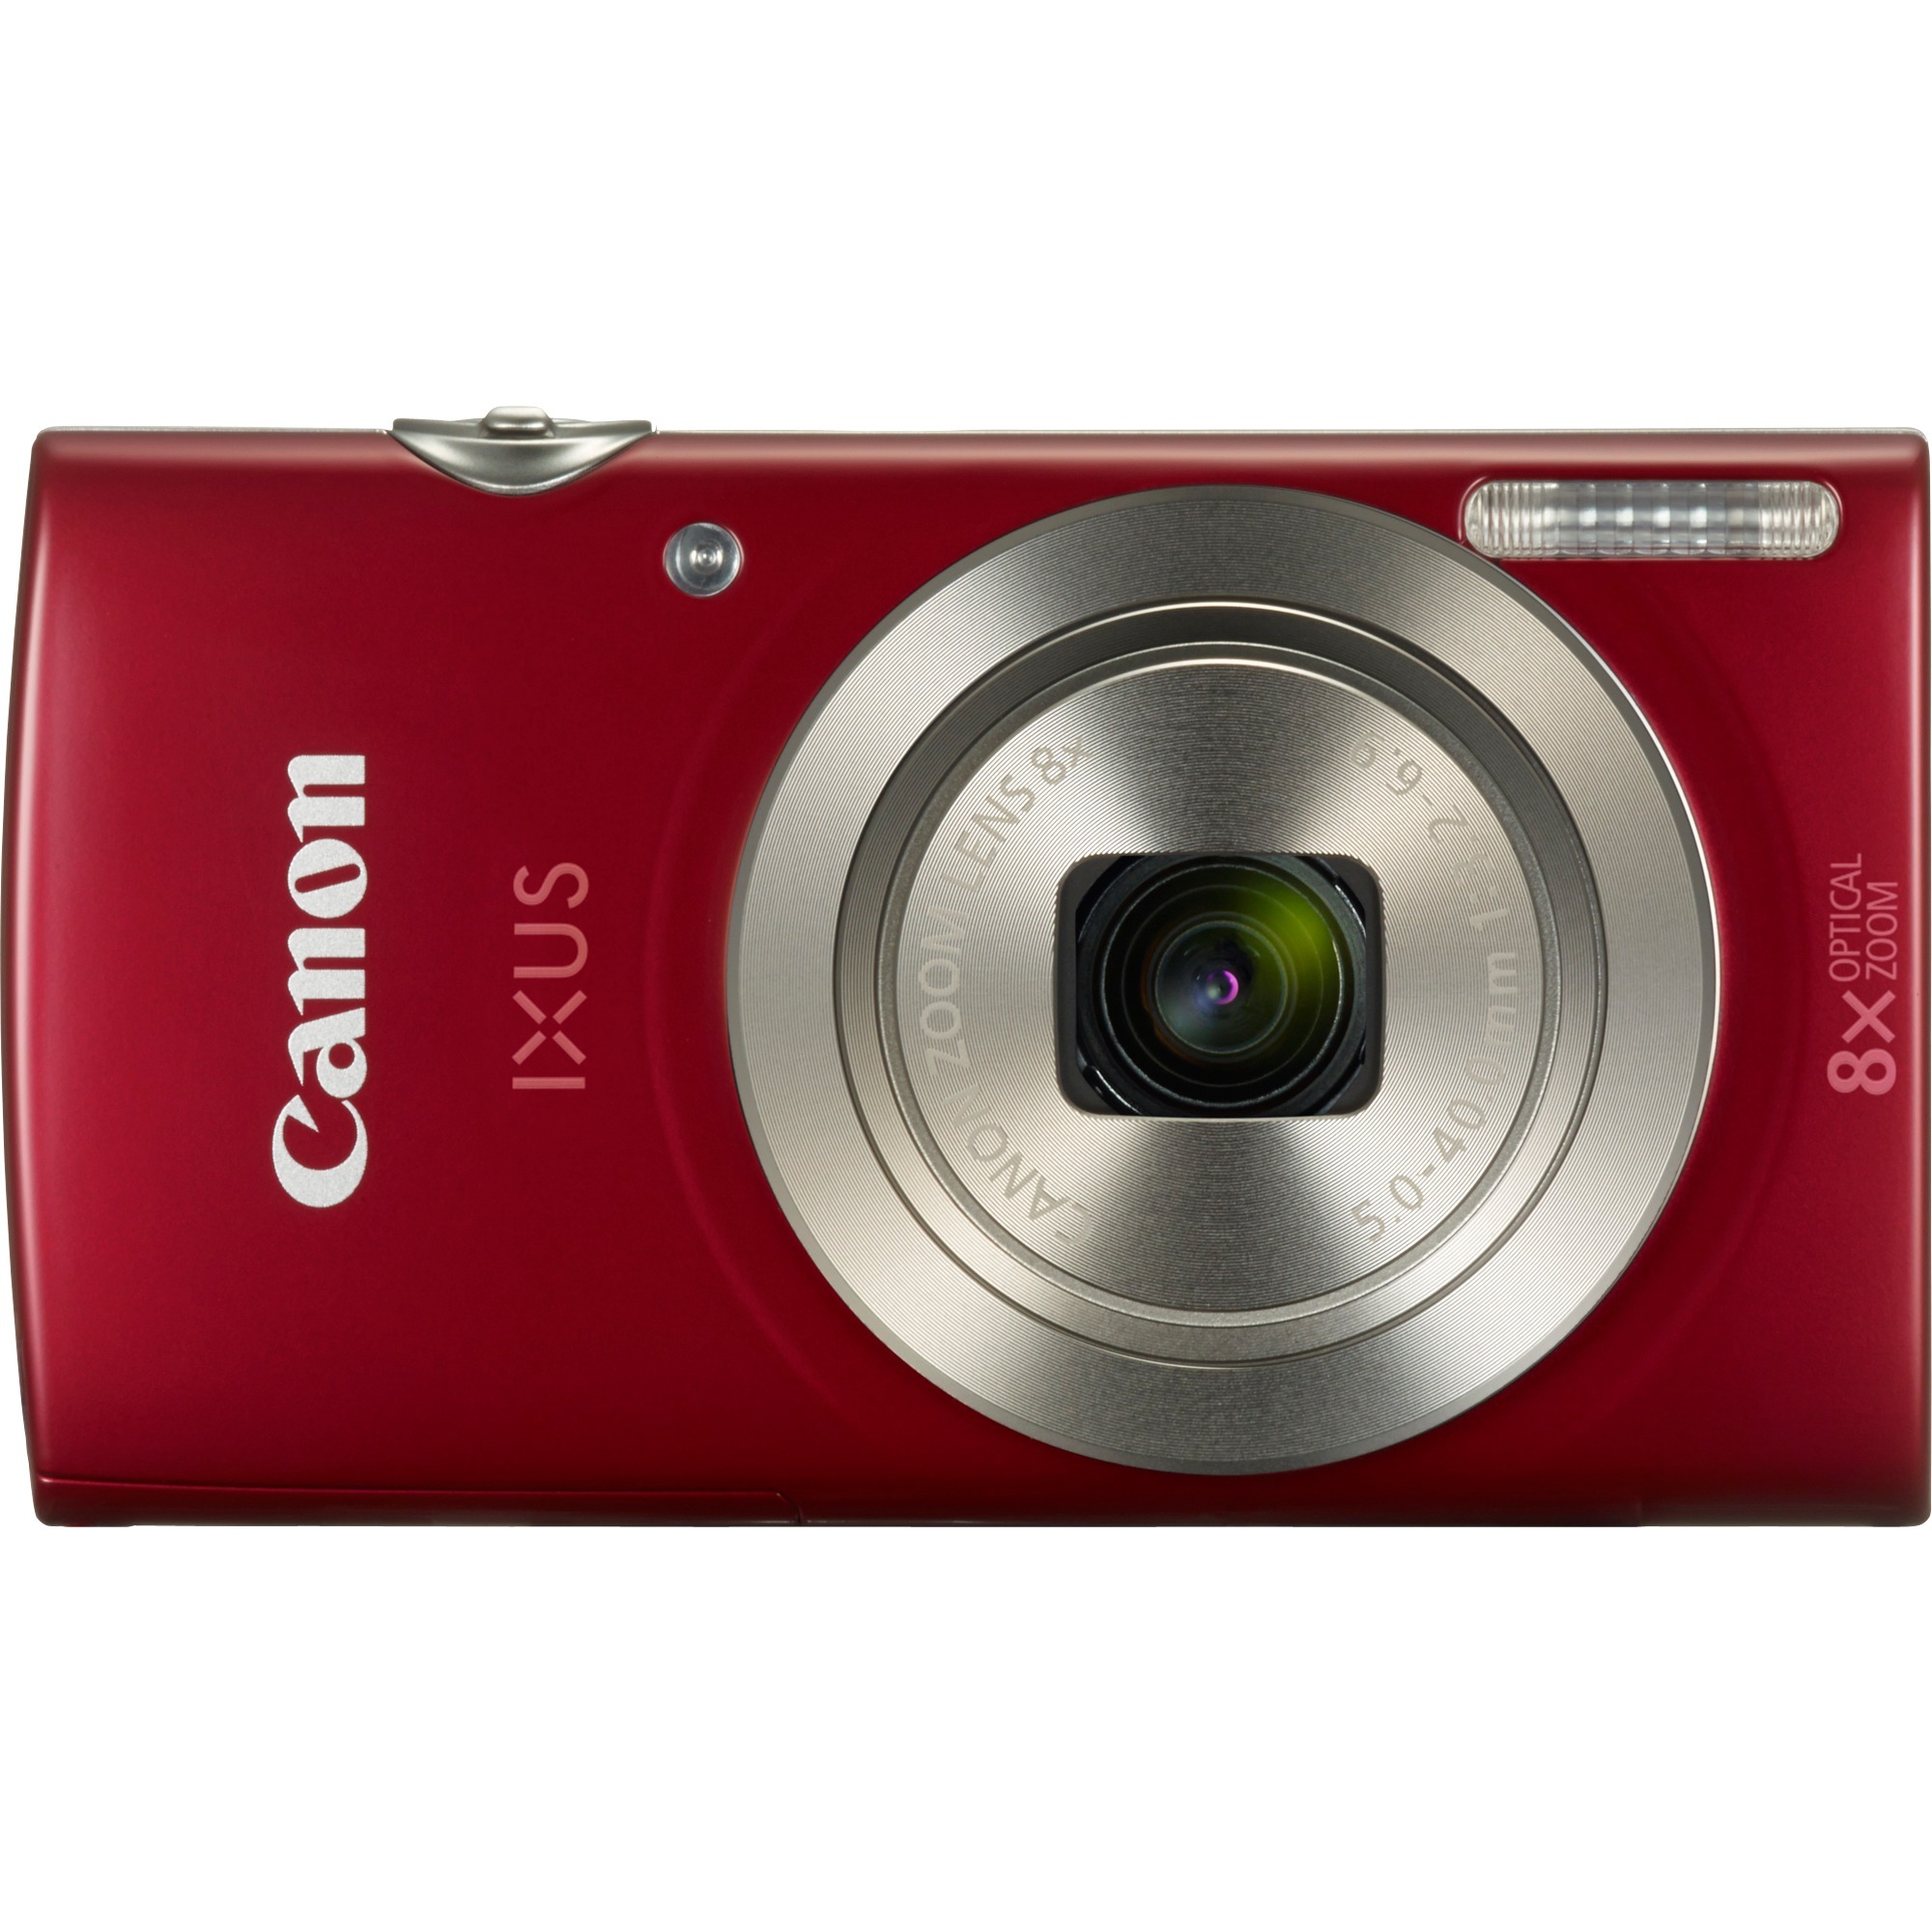 Digital IXUS 185 Kompaktowy aparat fotograficzny 20 MP 1/2.3" CCD 5152 x 3864 piksele Czerwony, Cyfrowy aparat fotograficzny